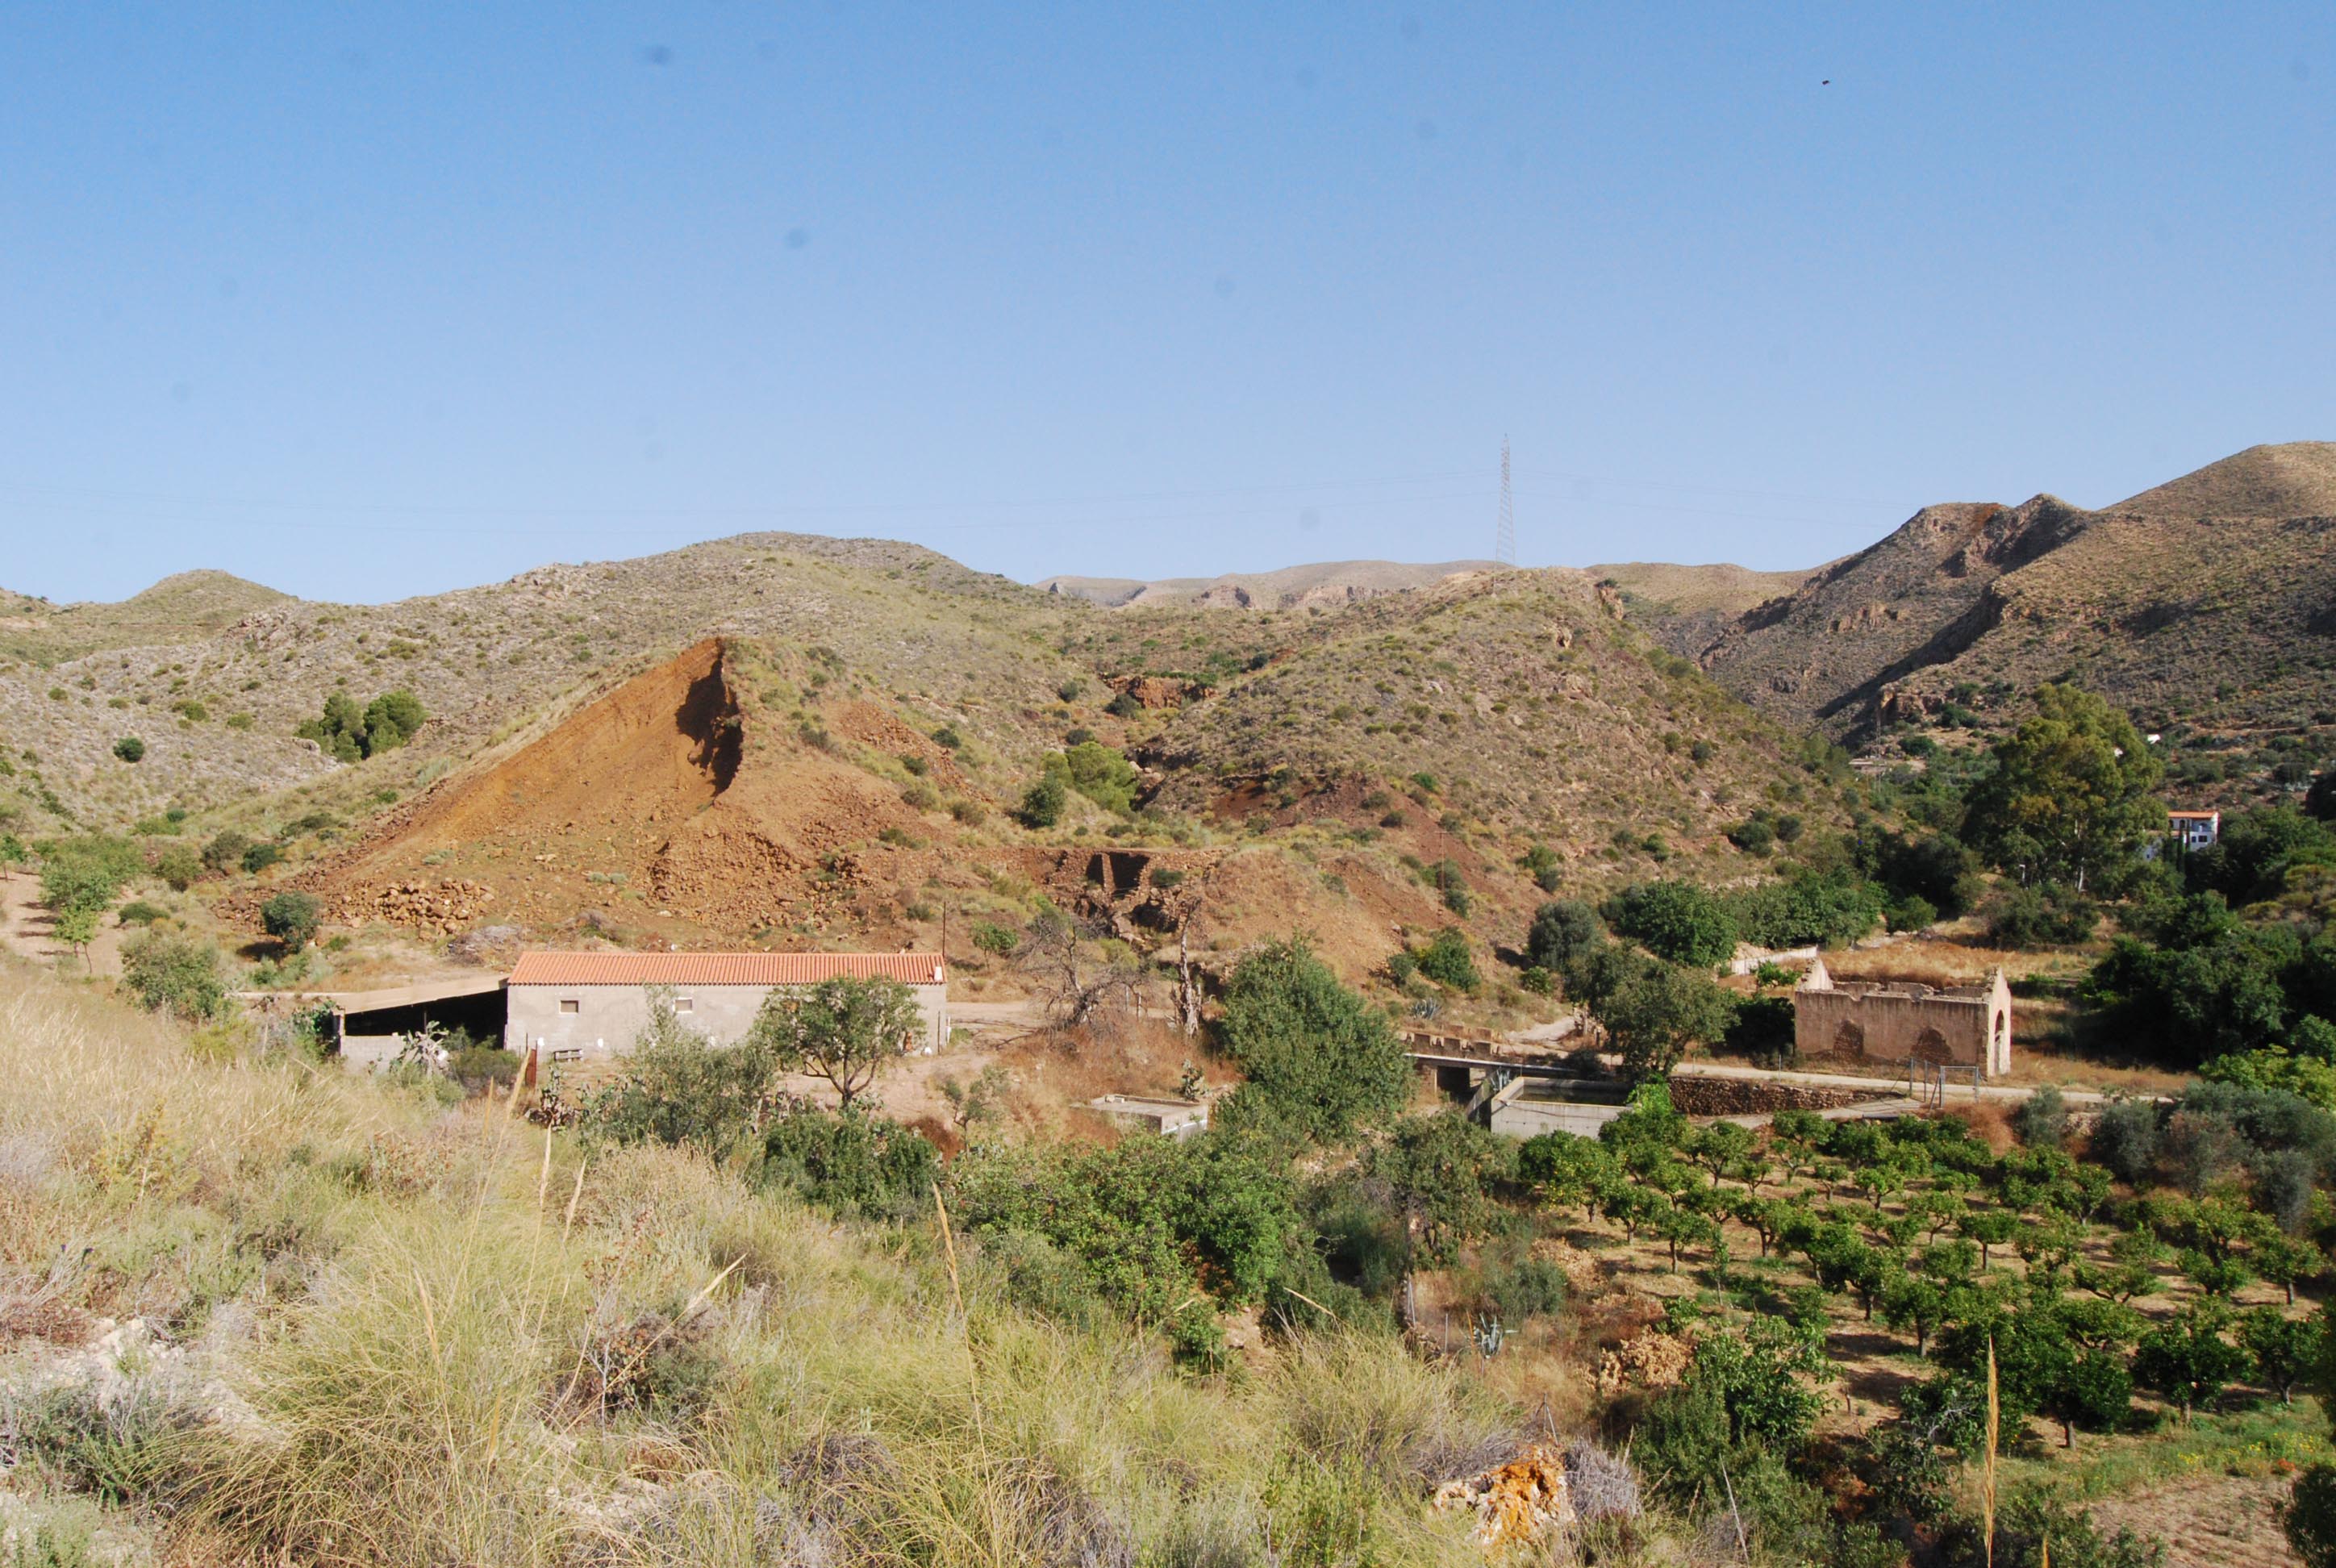 Vista general de la mina La Higuera, de la que se aprecia la montaña de la escombrera de hierro © Fotografía: Paco Bonilla